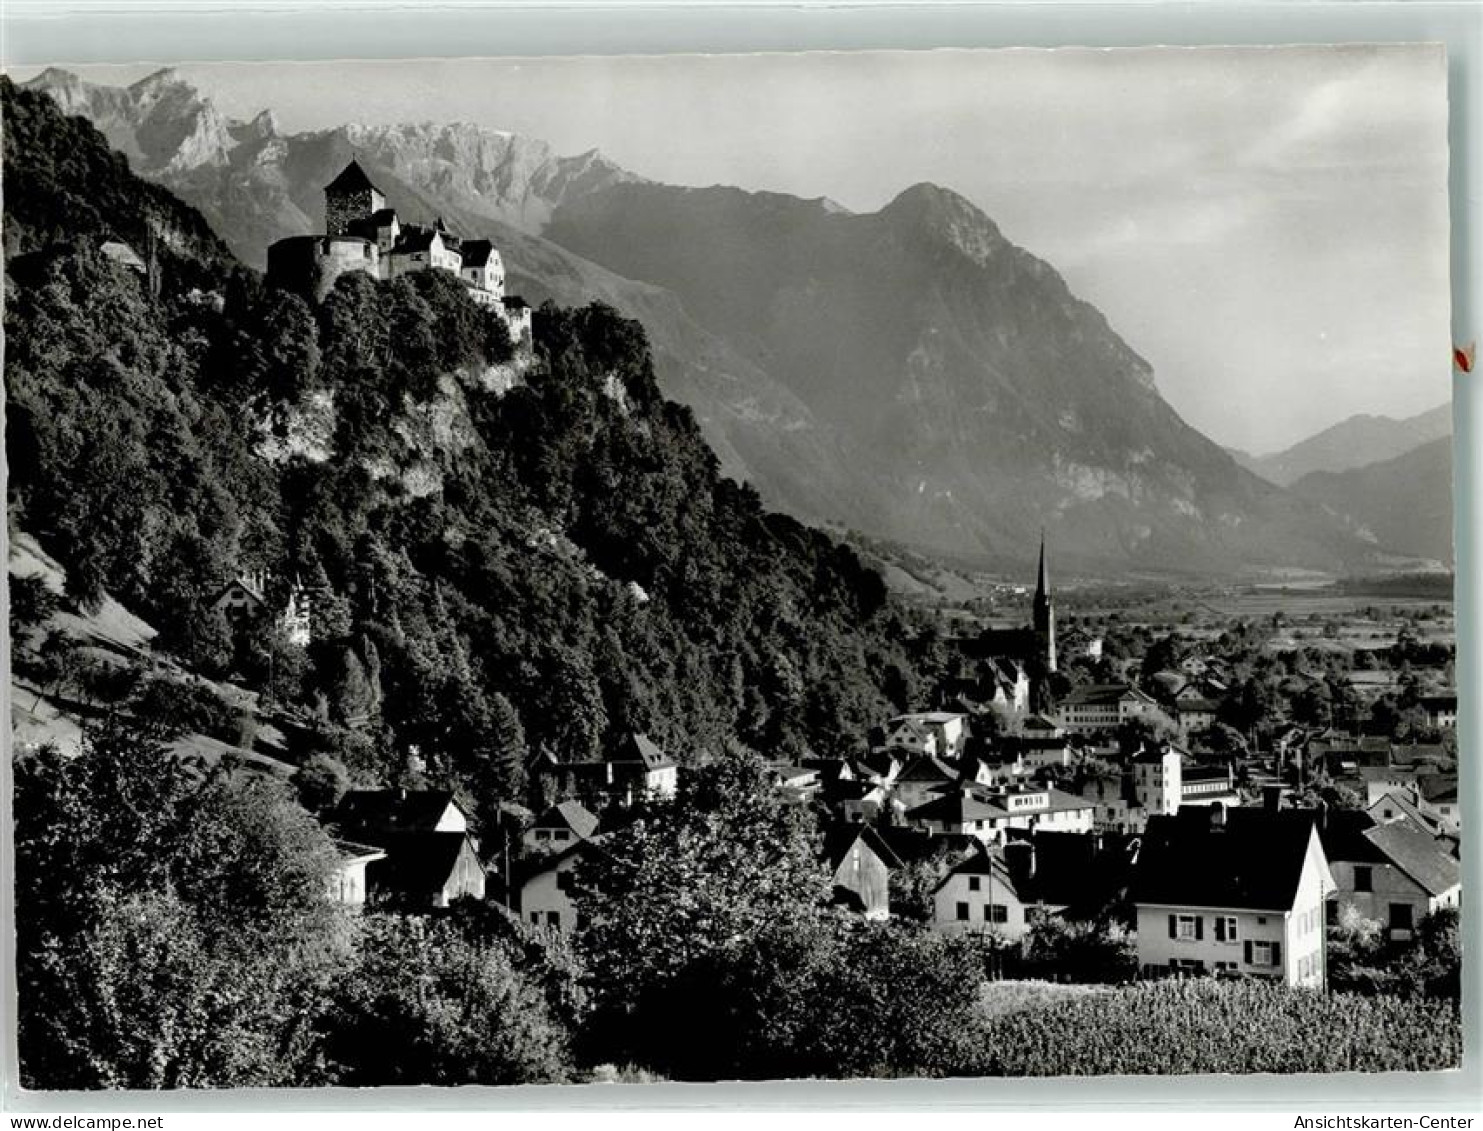 39360907 - Vaduz - Liechtenstein